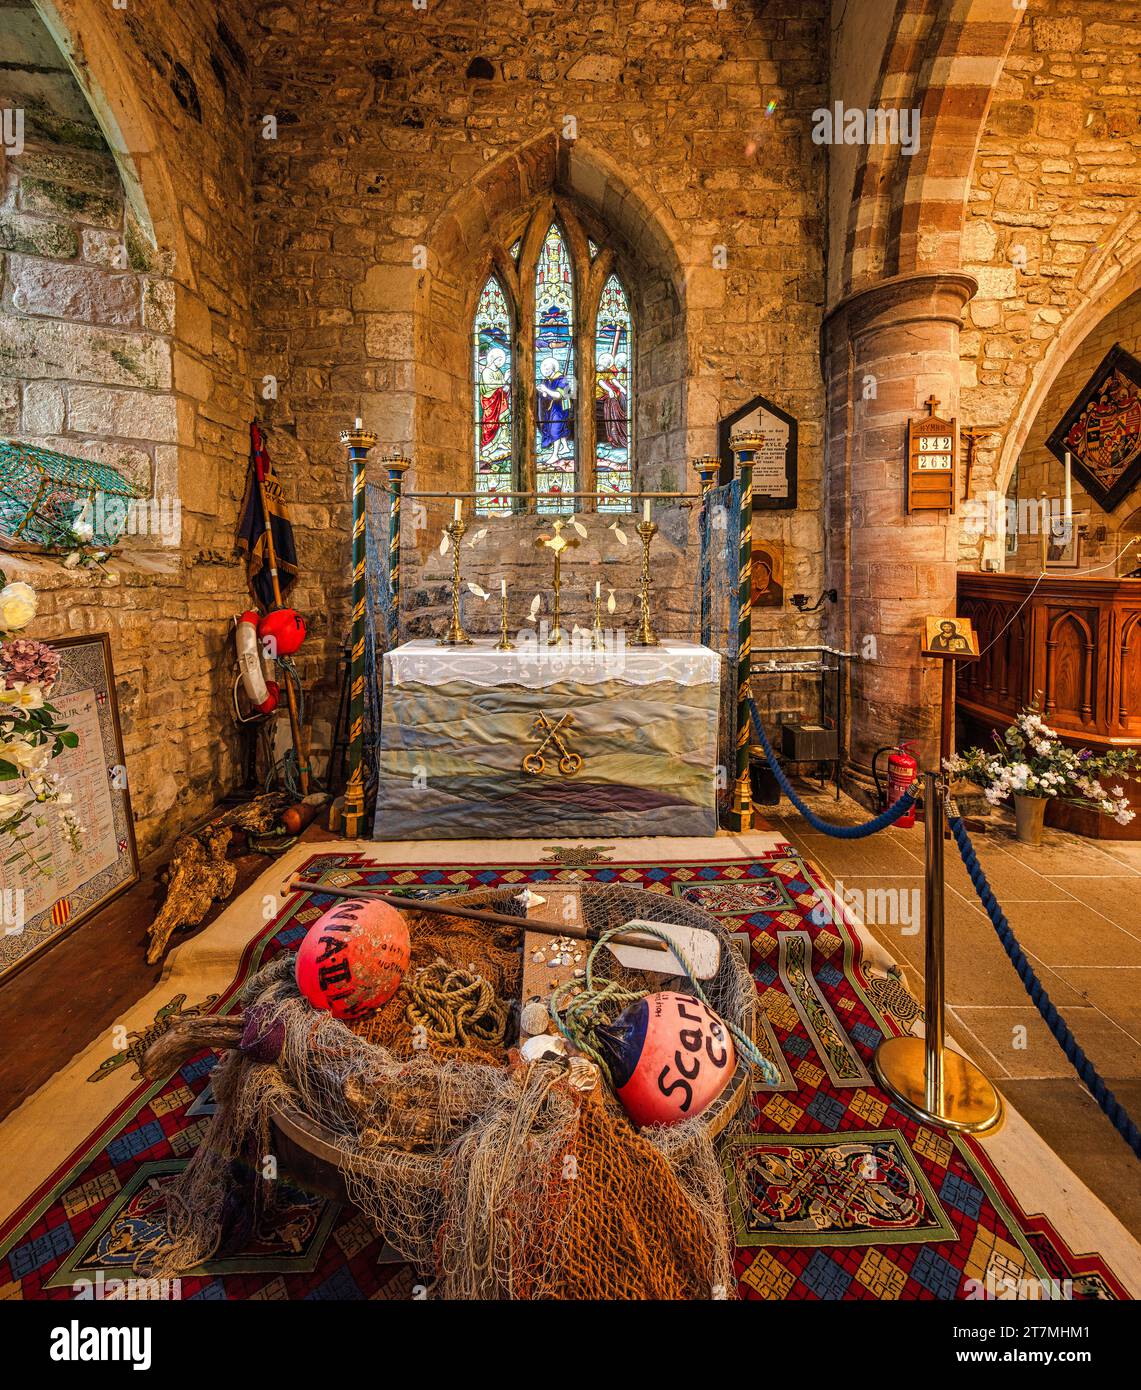 Vue intérieure de l'église Sainte Marie la Vierge sur l'île Sainte de Lindisfarne dans le Northumberland, Angleterre, Royaume-Uni Banque D'Images